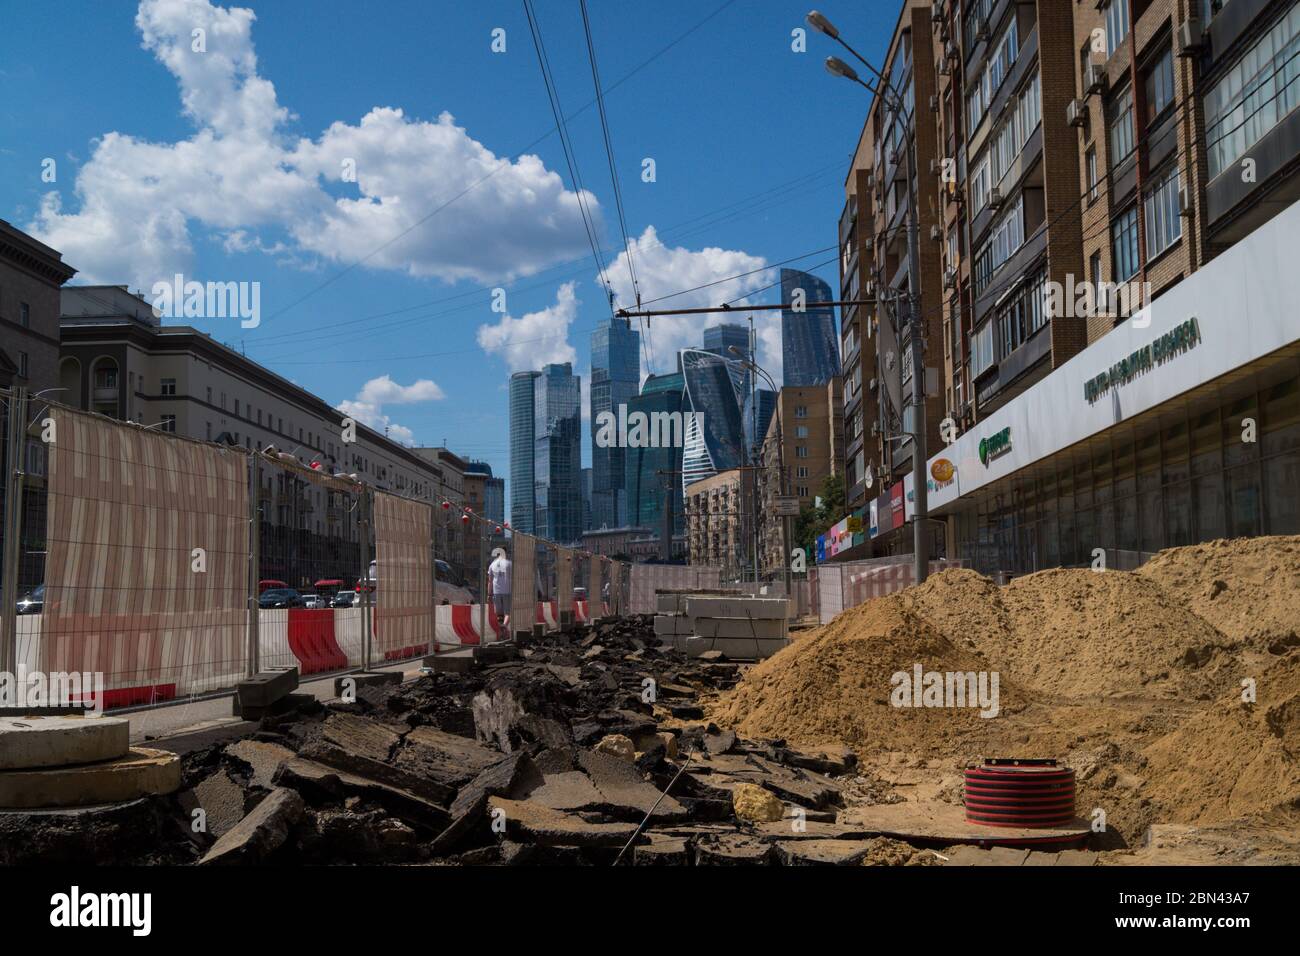 Russia, Mosca - 3 giugno 2019: Massiccia costruzione di strade a Mosca. Strade quasi impassabili per i pedoni a causa di lavori di scavo. Foto Stock